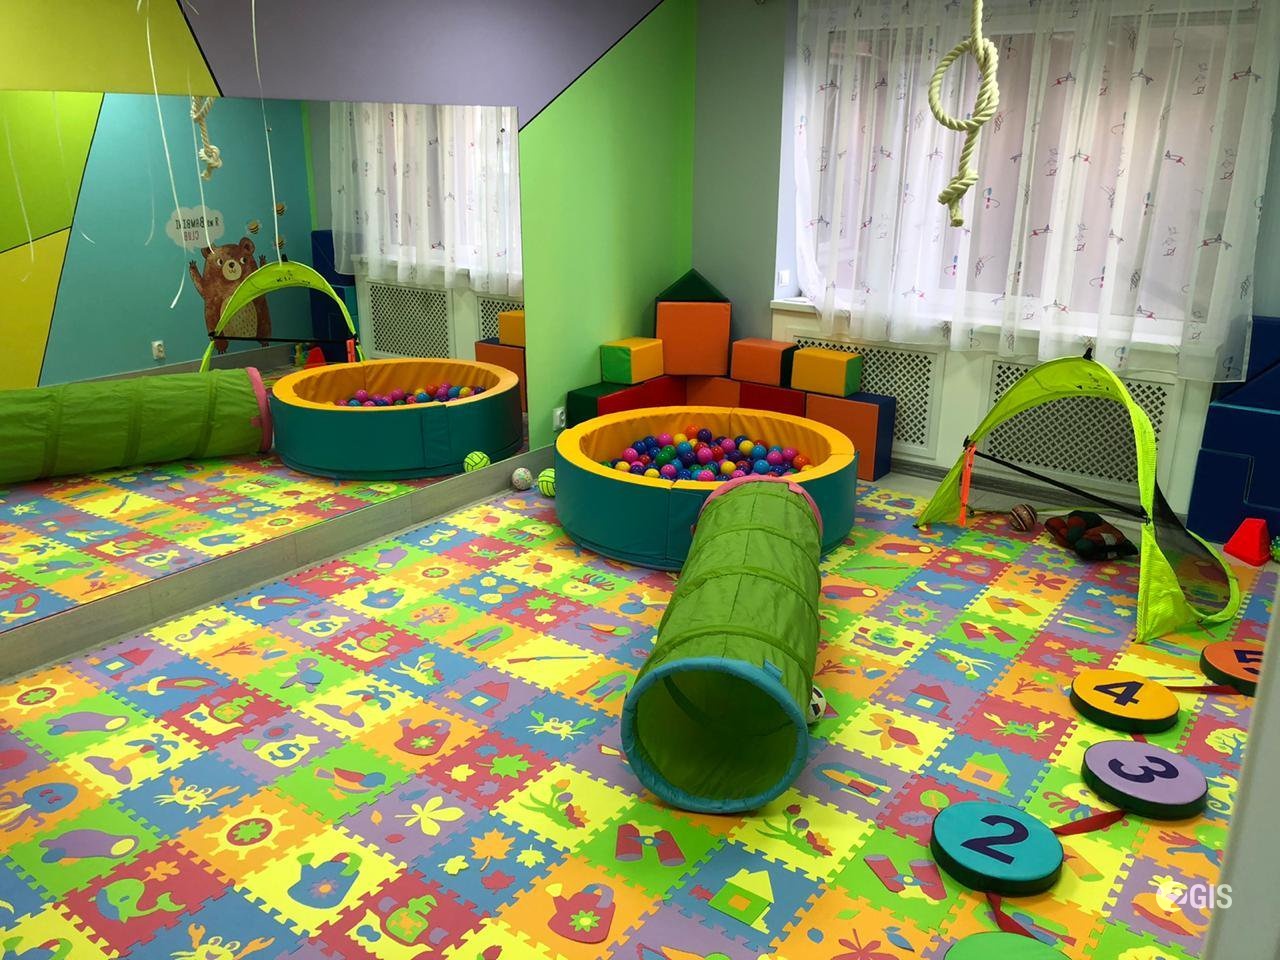 Bambini-Club, международная сеть частных детских садов